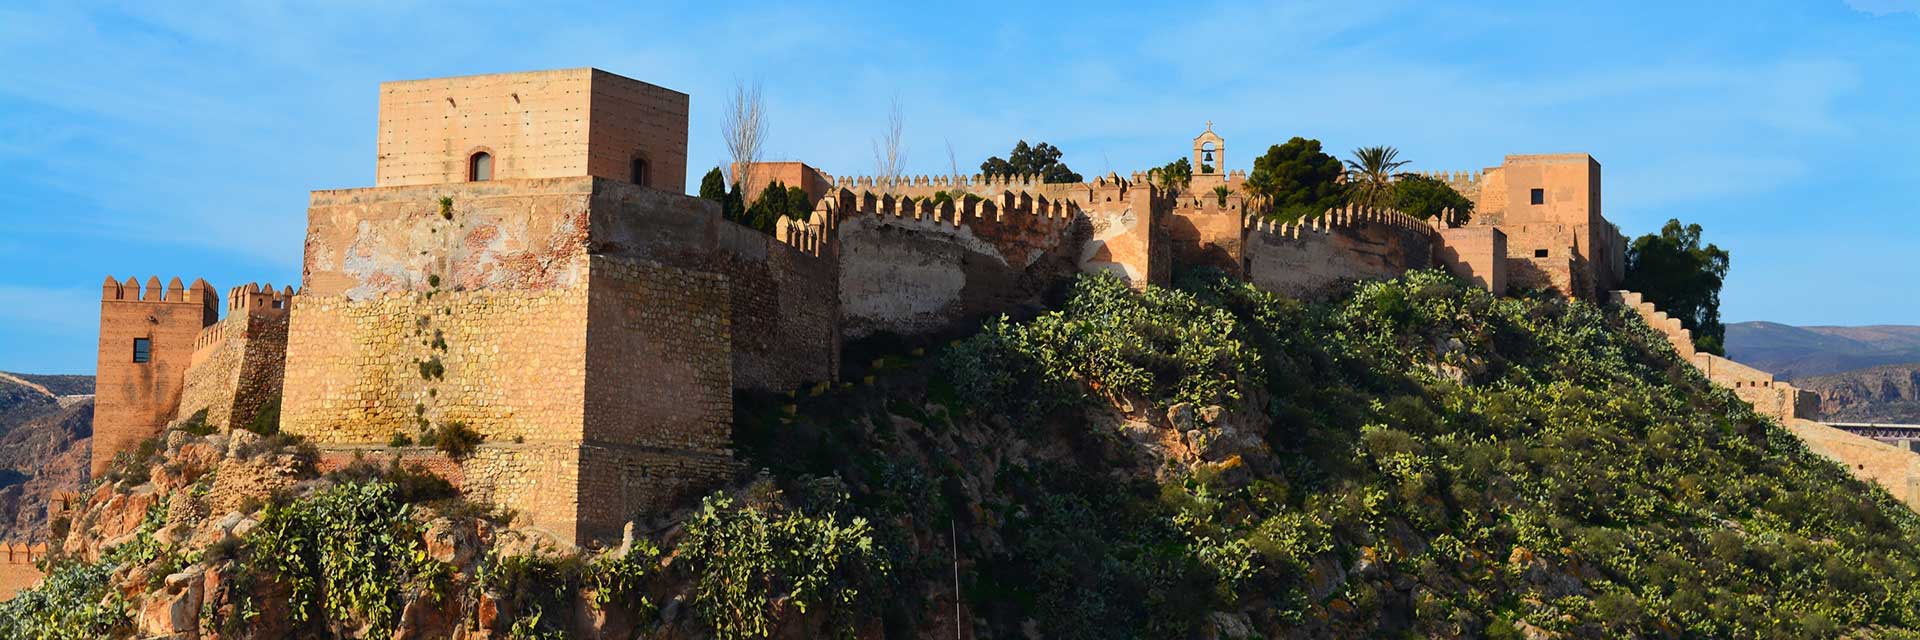 Alcazaba - Muslim castle of Almeria【 Almería Coast】